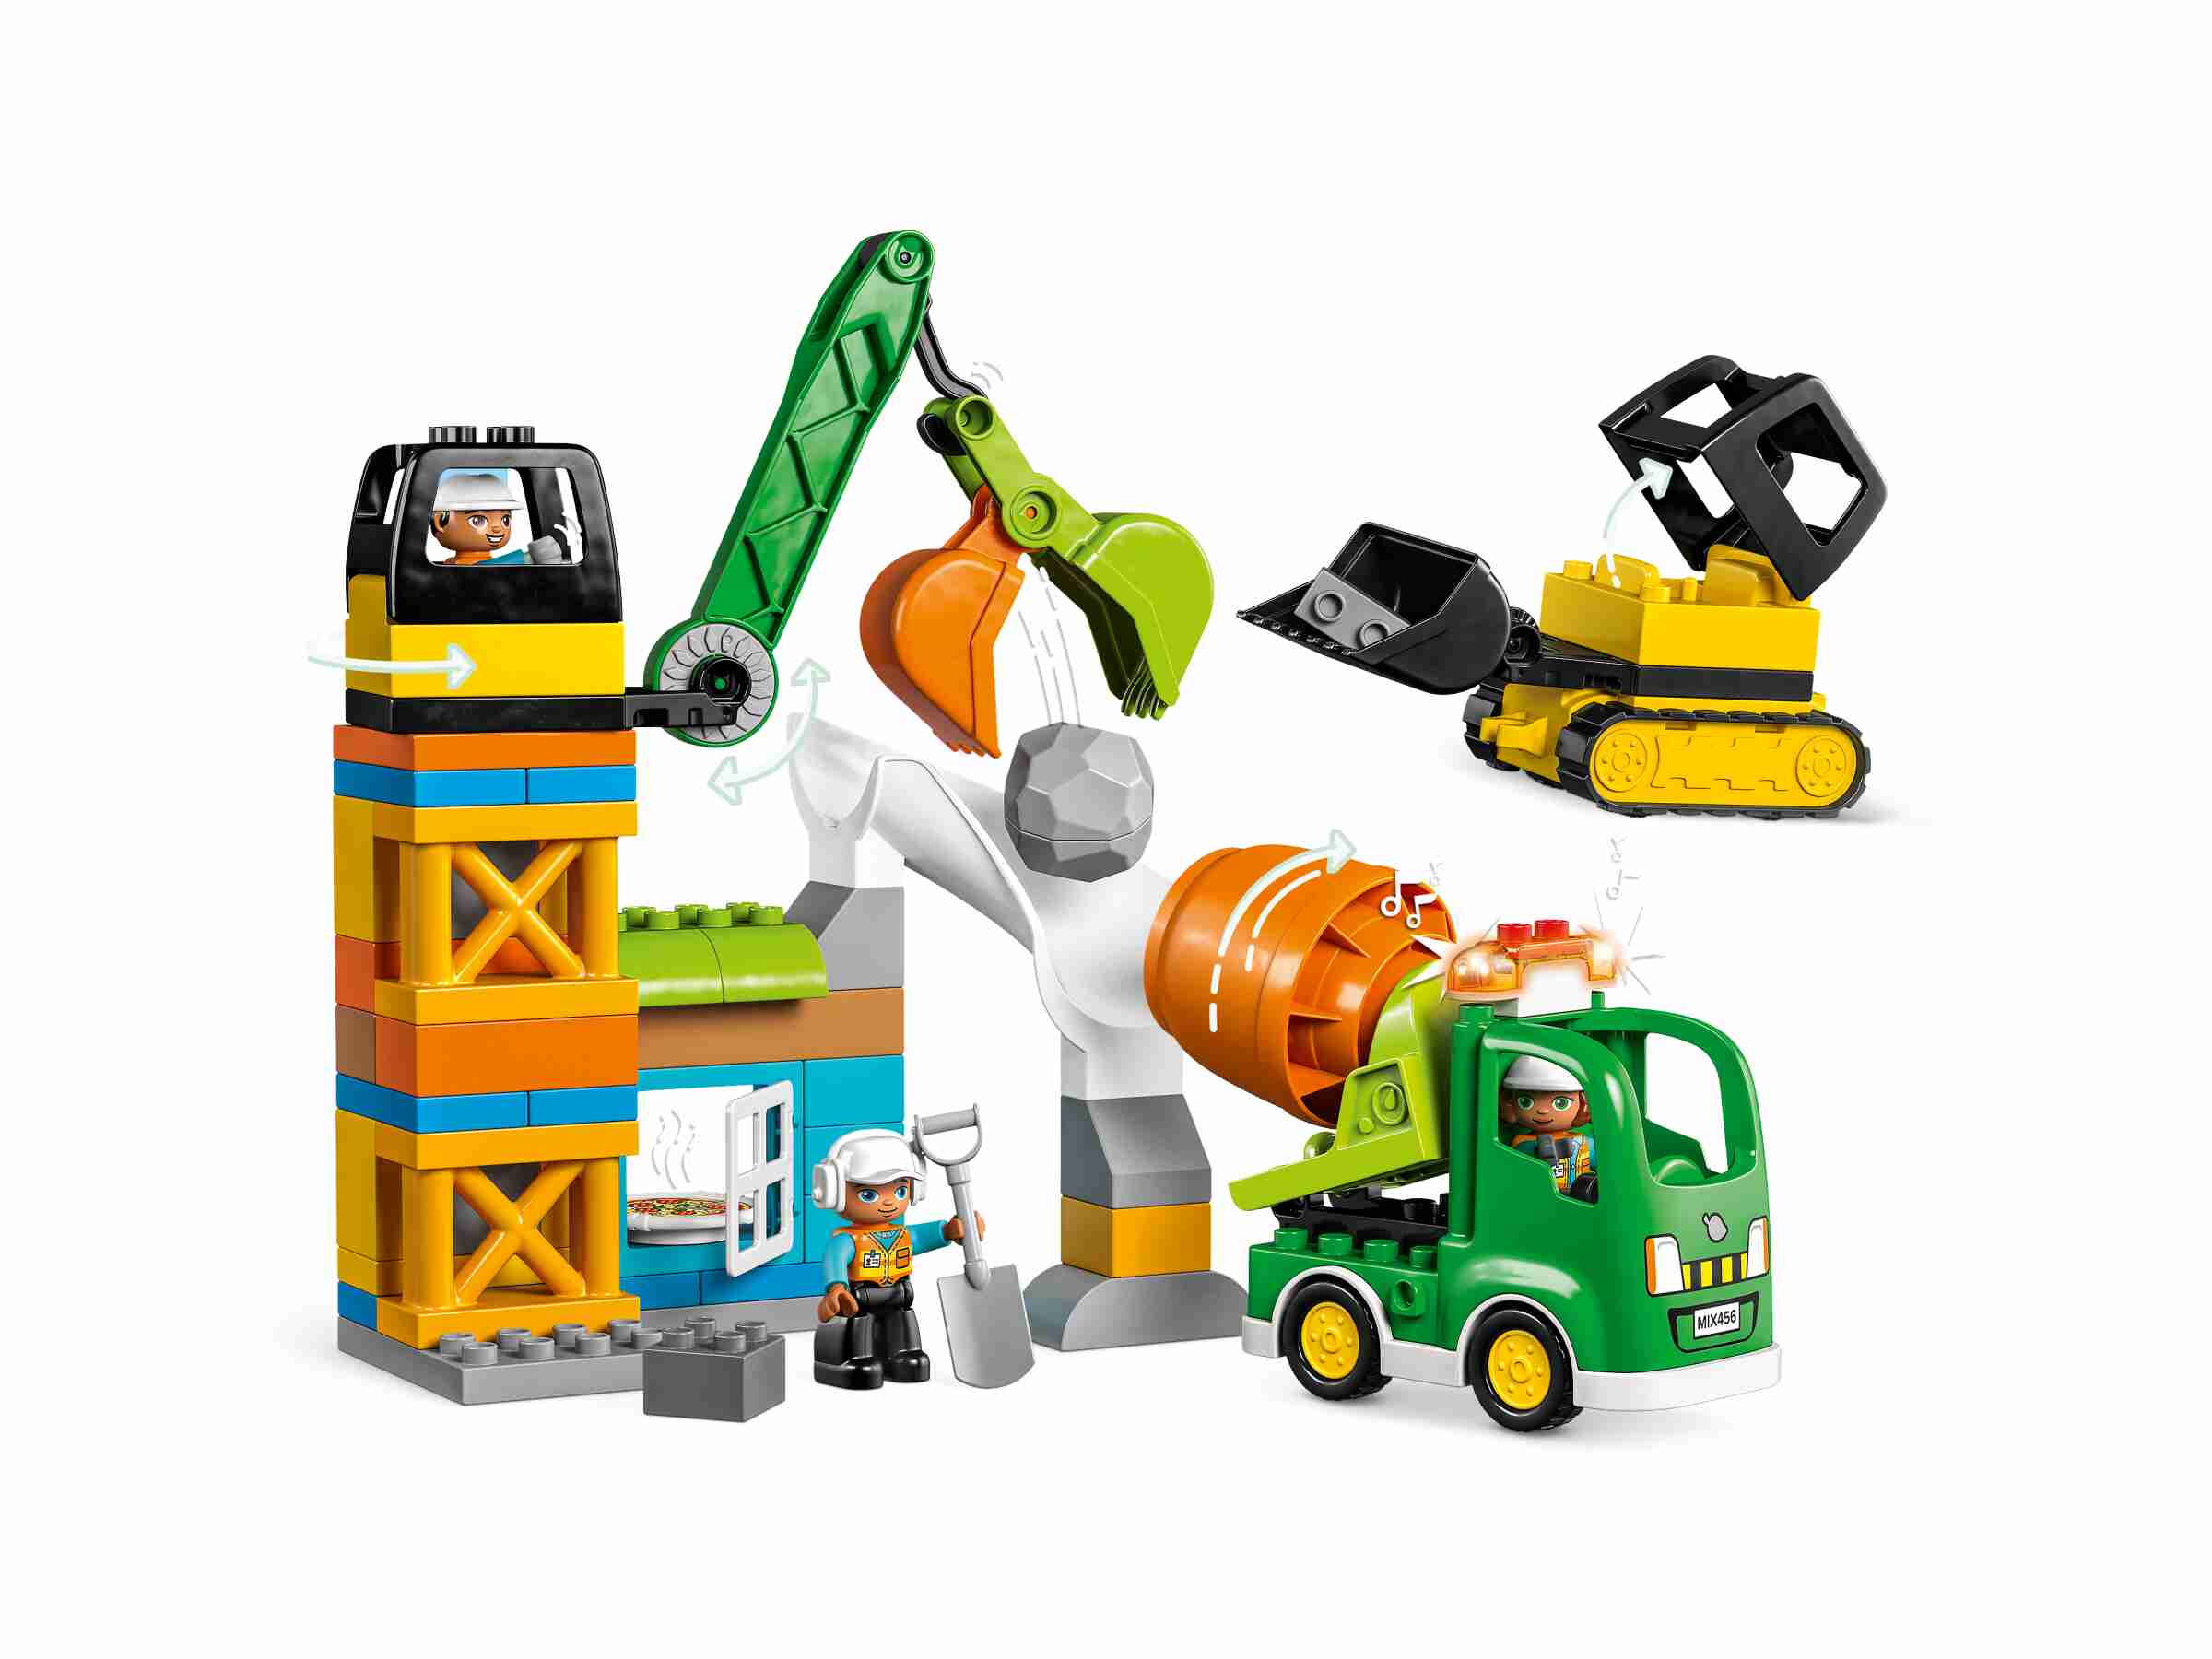 LEGO 10990 DUPLO Baustelle mit Baufahrzeugen, 3 Baufahrzeuge, 3 Bauarbeiter